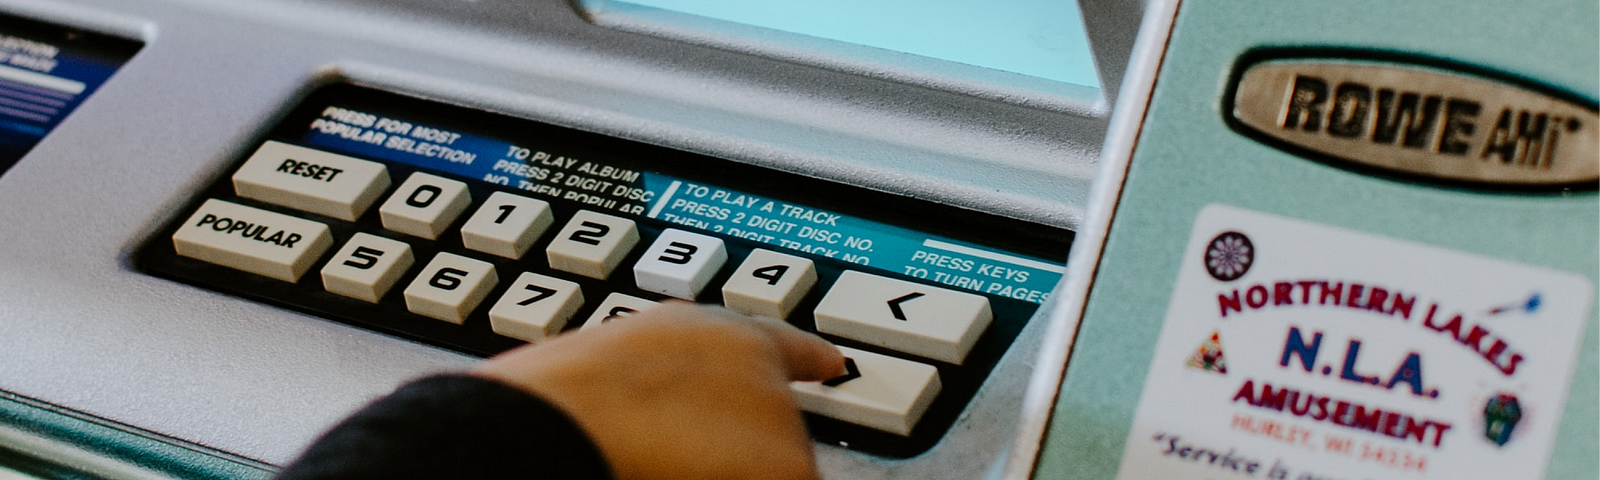 Uma pessoa está pressionando o botão próximo em uma máquina vintage de compra de discos com interface mínima